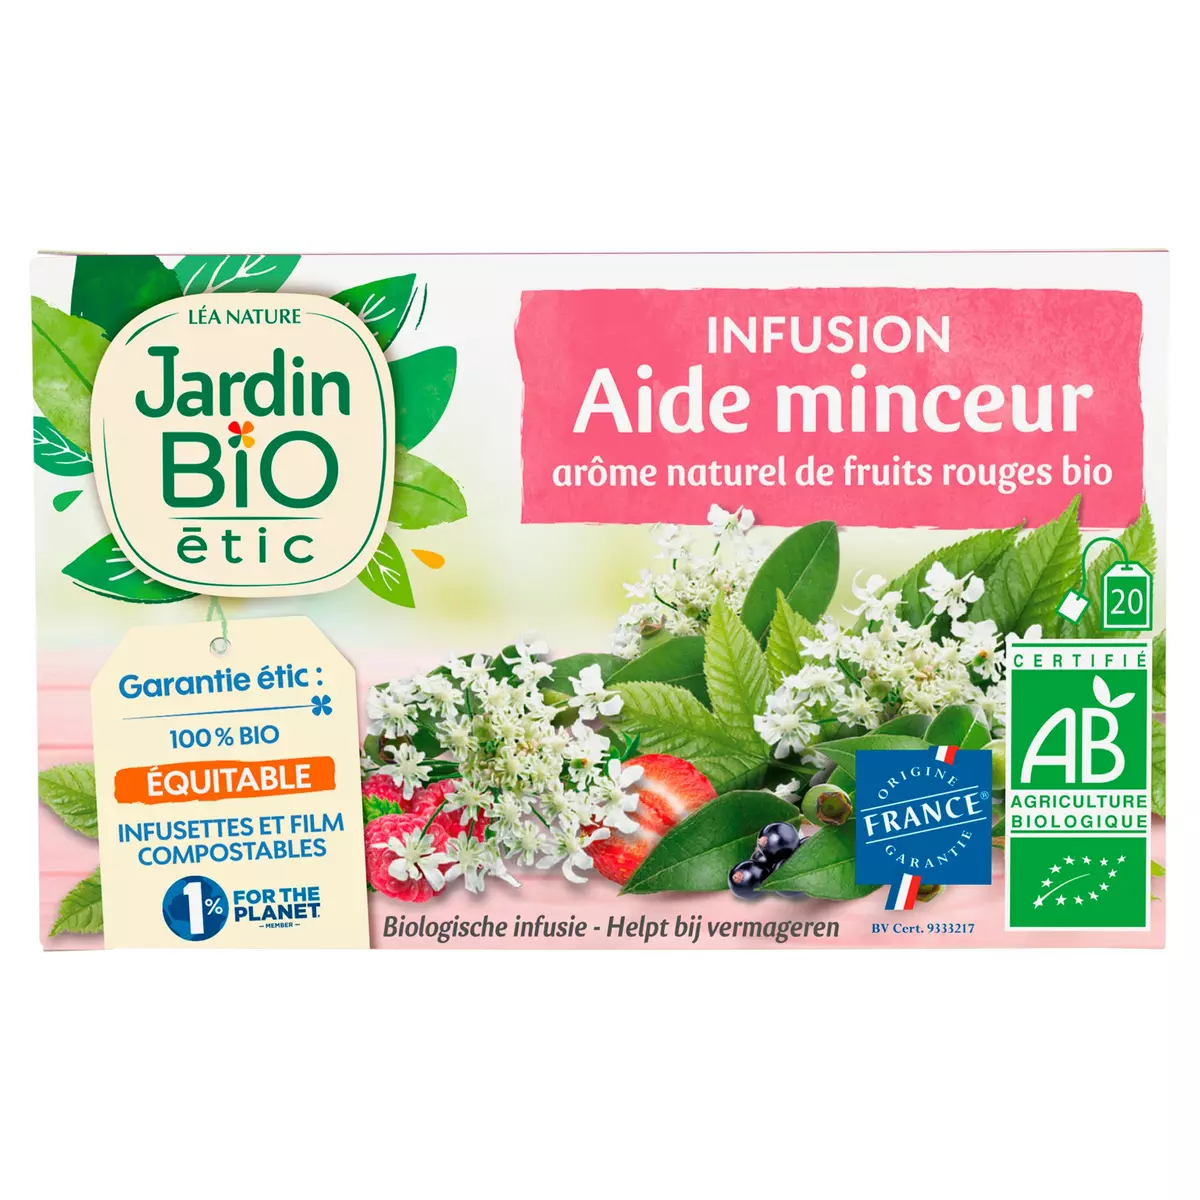 JARDIN BIO ETIC Infusion aide minceur aux arômes naturels de fruits rouges bio 20 sachets 30g